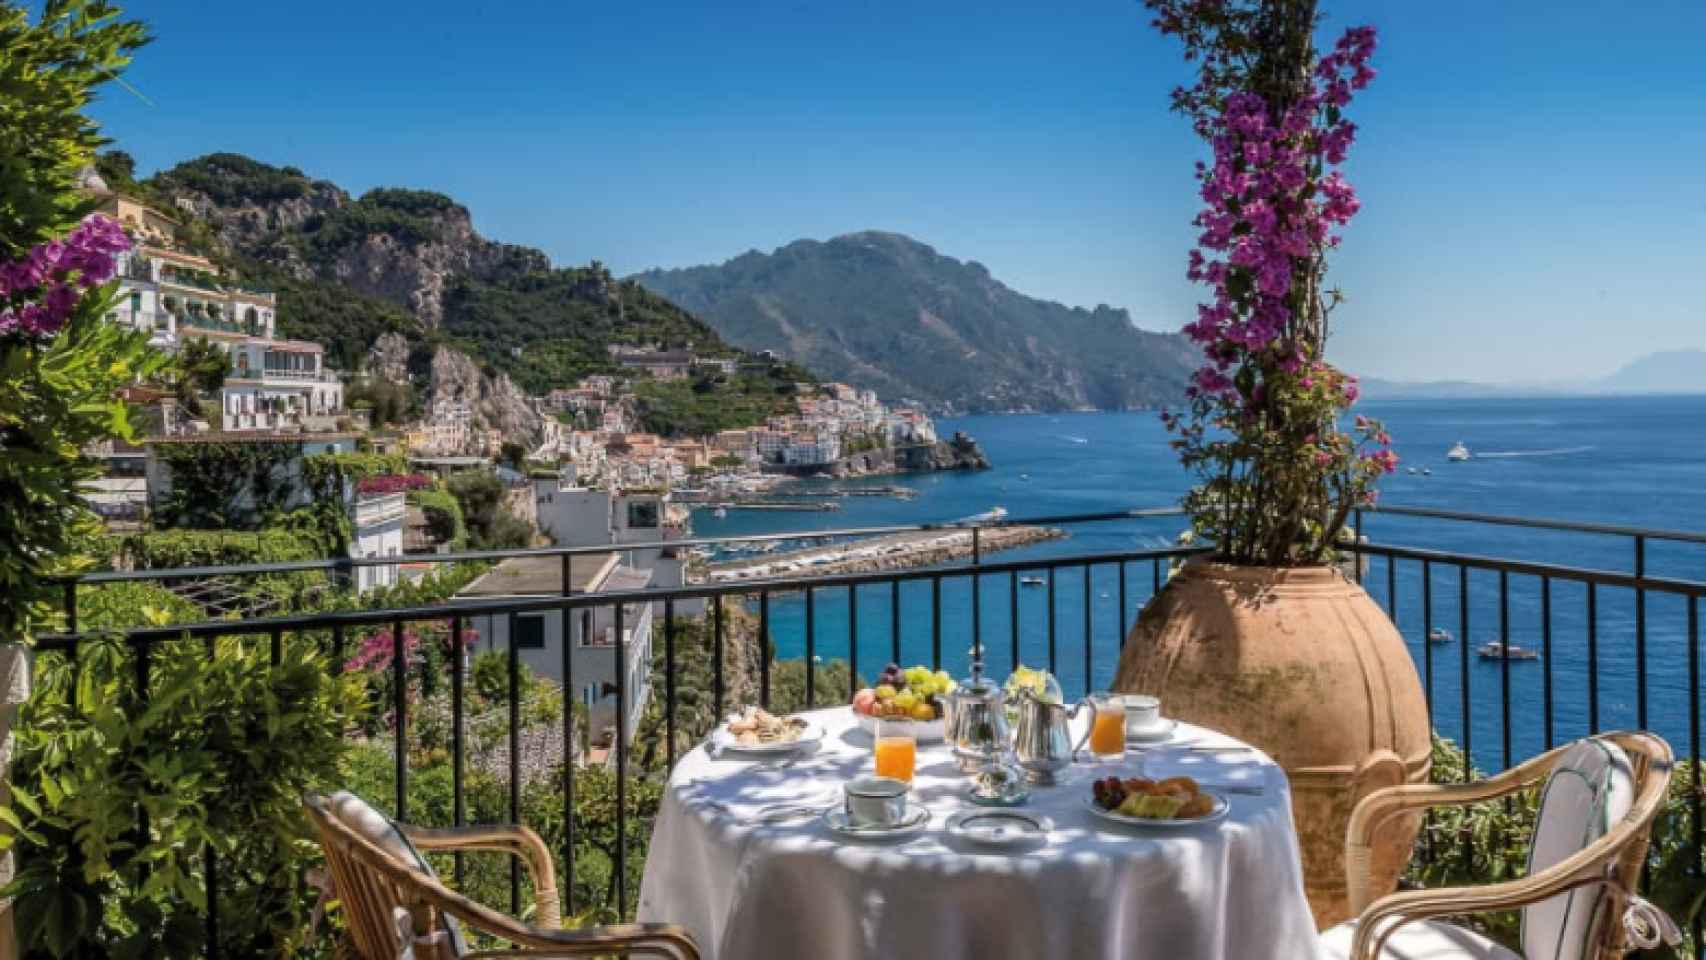 Los restaurantes del hotel Santa Caterina tienen vista panorámica al mar.